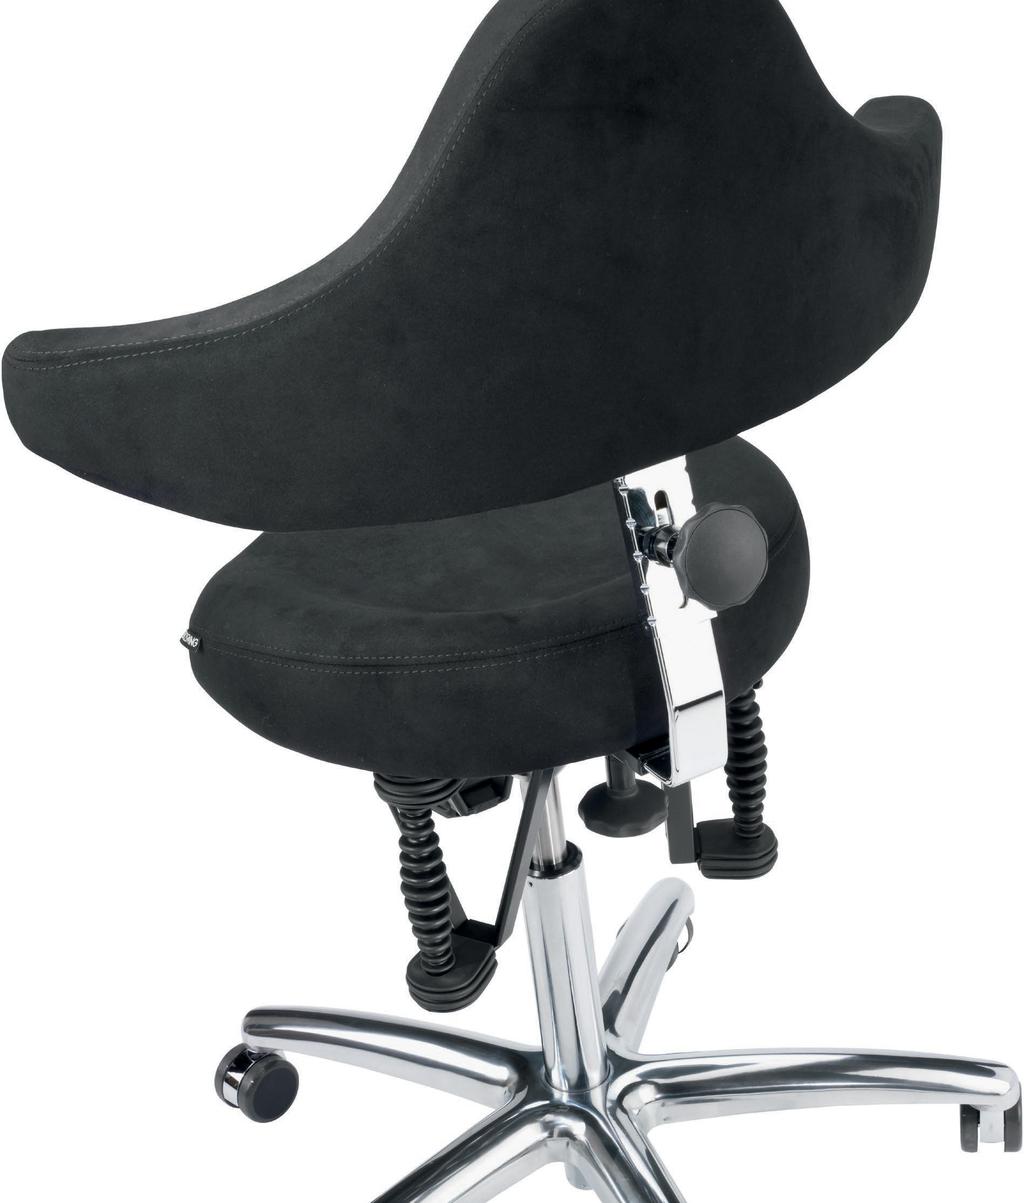 Das Sitzsystem BIOSWING Boogie stretch Die agile Sitz-Stehdynamik mit perfekter Ergonomie Neben der ergonomisch hochwertigen und komfortablen Bestseller-Ausführung des BIOSWING Boogie strech mit